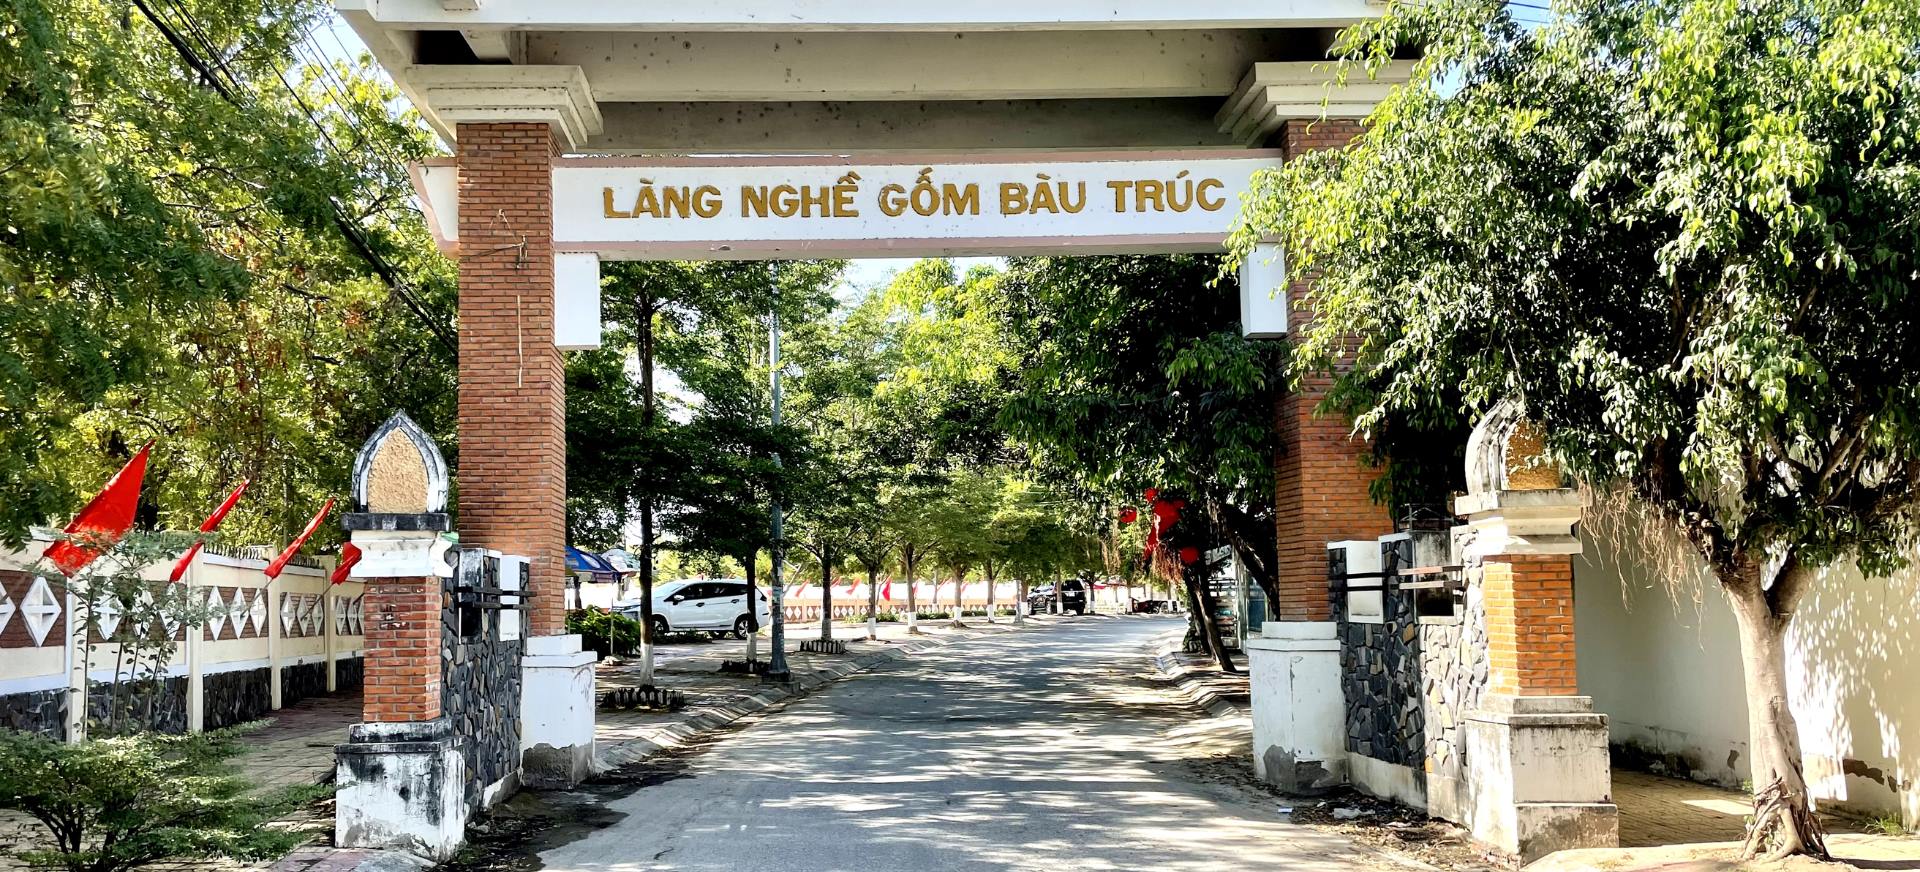 Du Lịch Tết Dương Lịch Đảo Bình Hưng - Ninh Chữ 3 ngày từ Sài Gòn